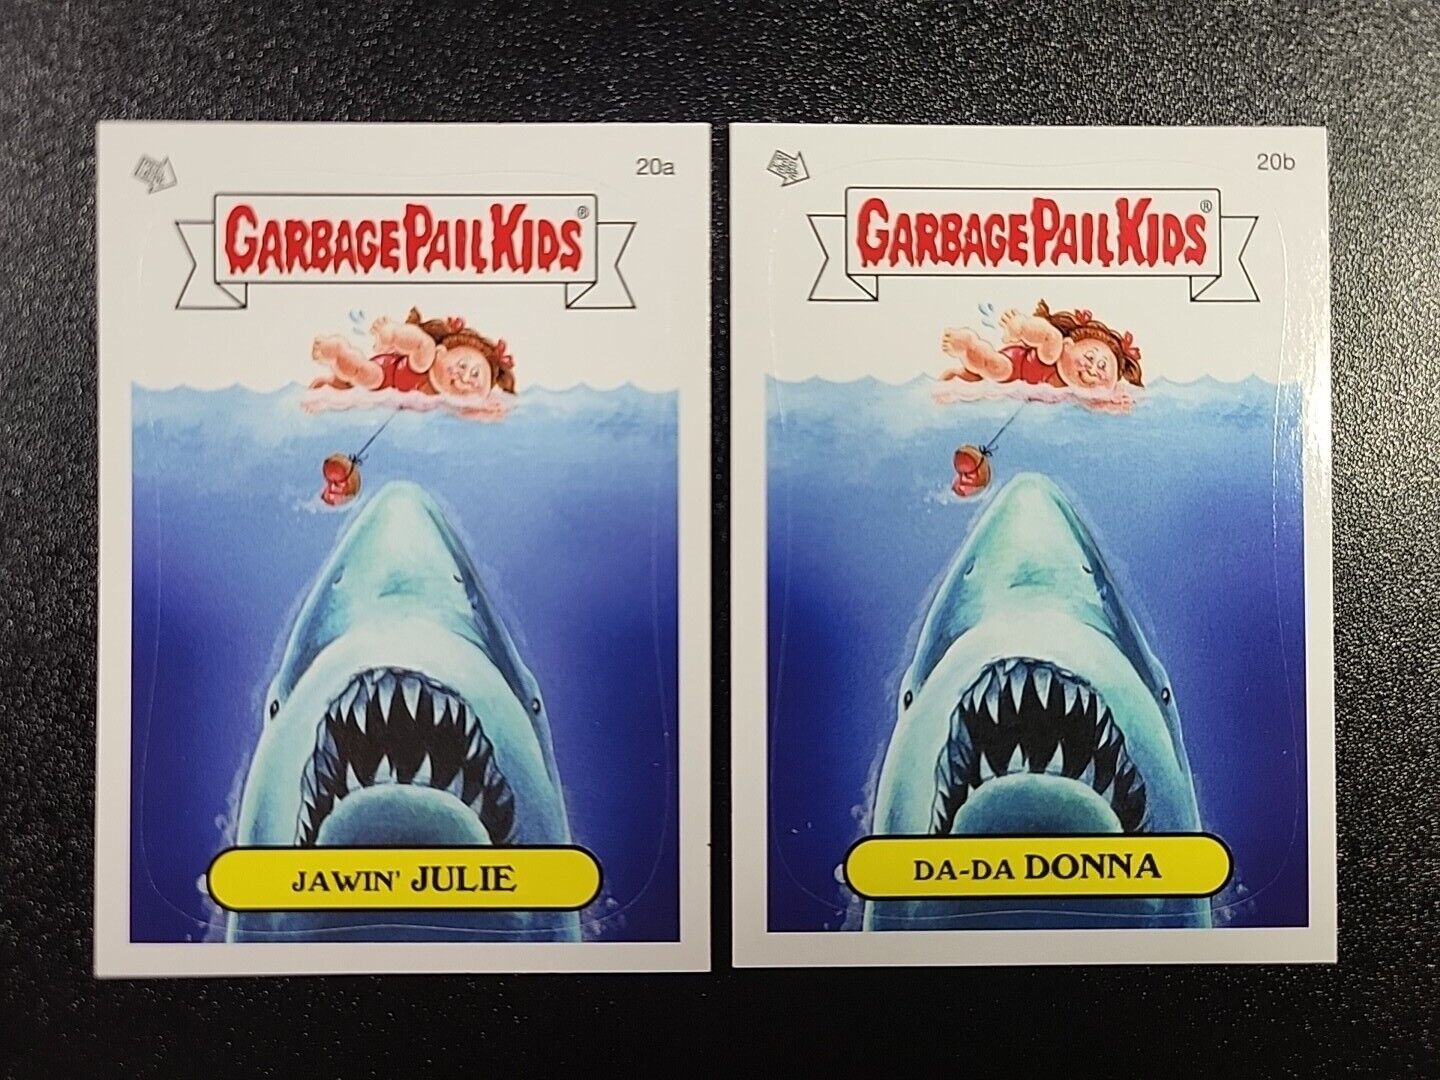 Jaws Steven Spielberg Robert Shaw Roy Scheider Spoof Garbage Pail Kids Card Set